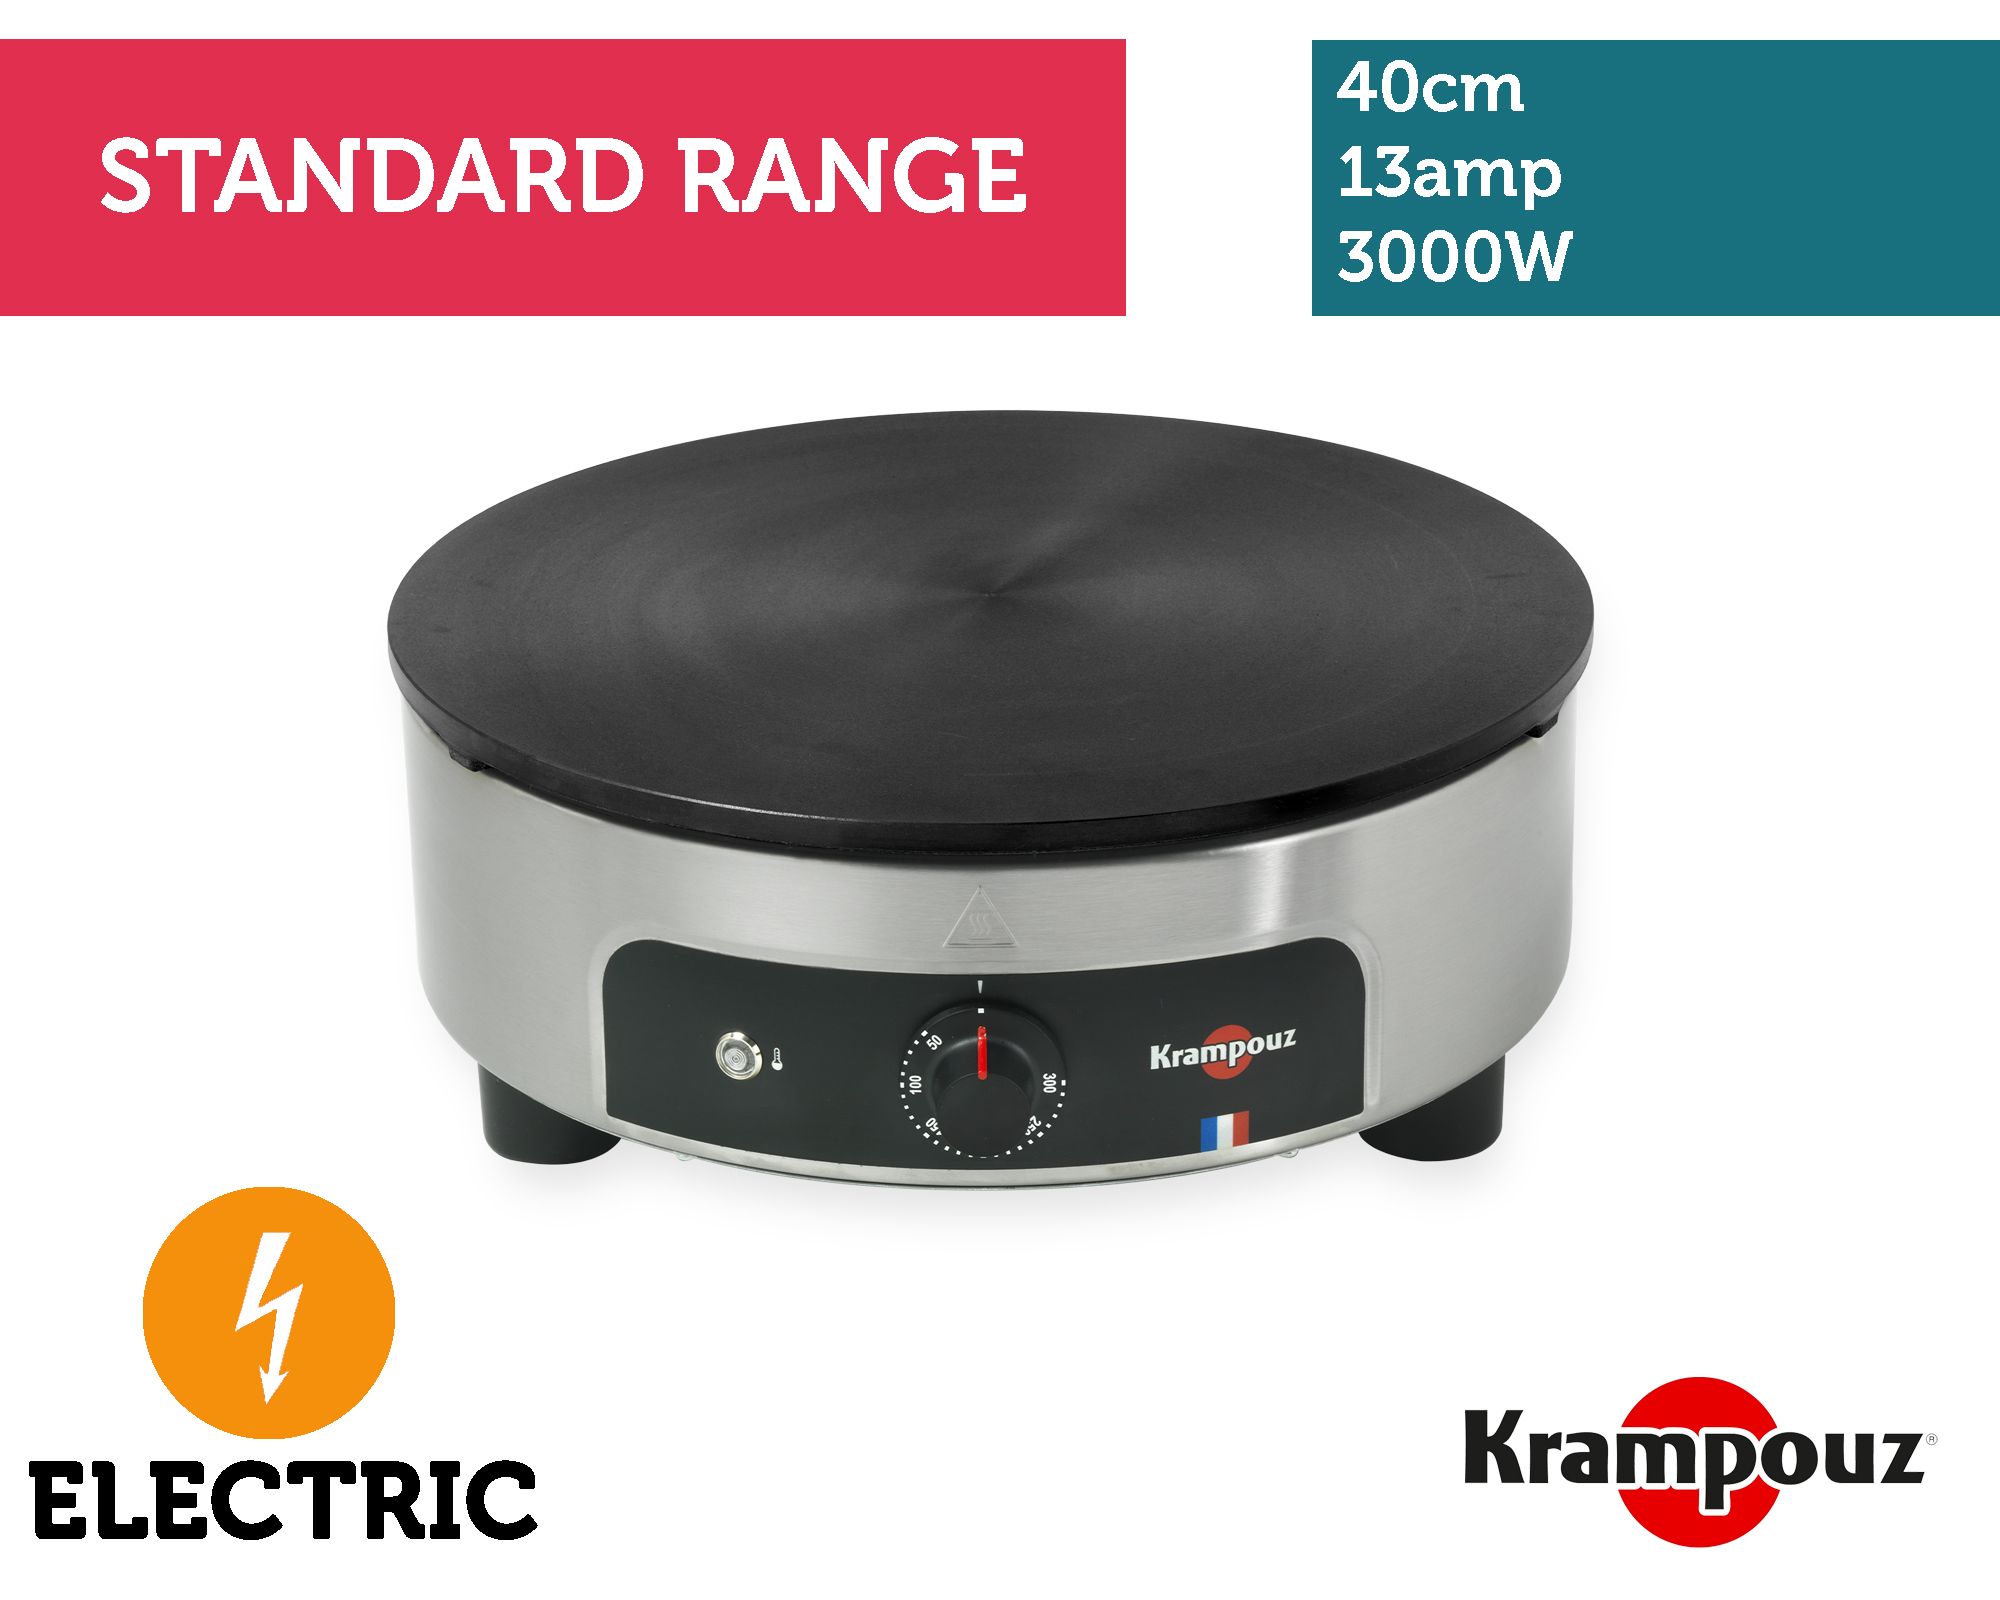 Krampouz 400mm Standard Electric Crepe Make | Crêpes-Maker